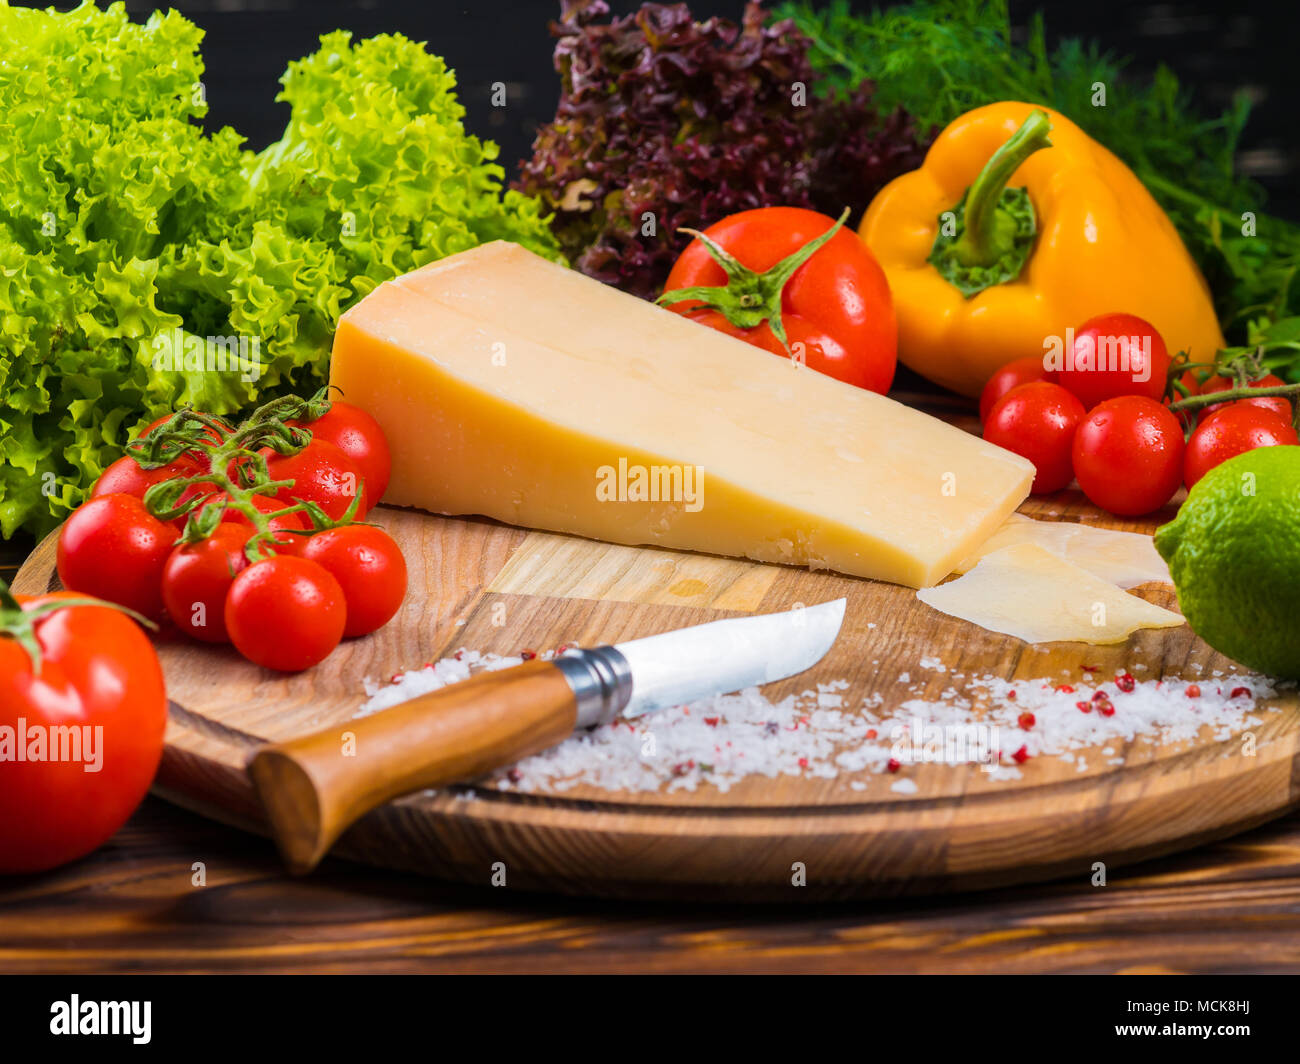 Holzbrett mit Parmesan Käse, frische Tomaten, Kopfsalat, Meersalz, Paprika und rote bulgarischen Pfeffer. Das Messer zum Schneiden von Gemüse. Noch appetitlich Leben von Gemüse Stockfoto